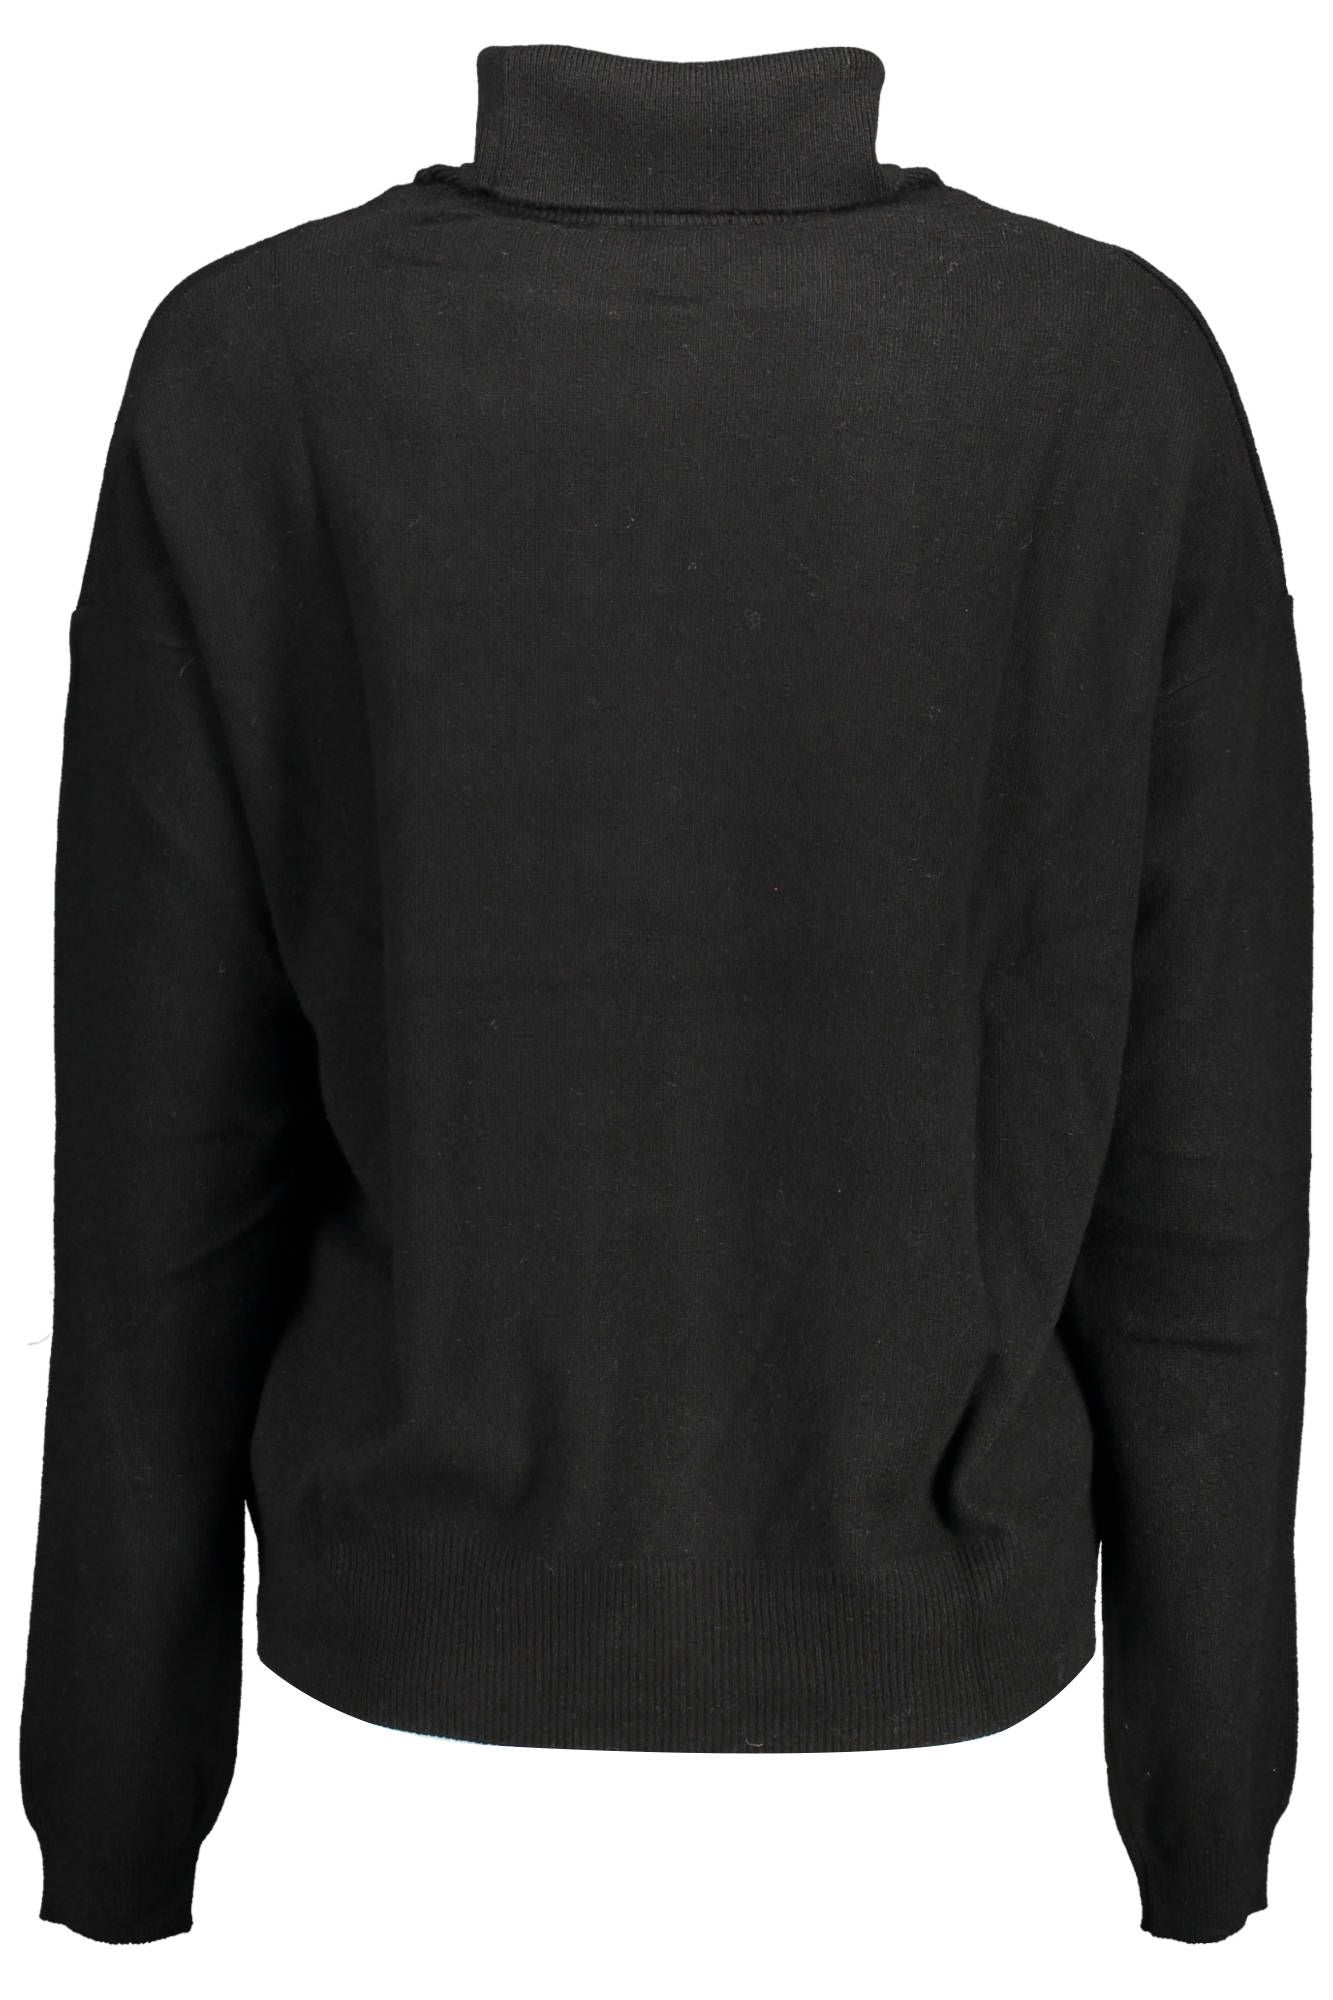 U.S. Polo Assn. Women's Black Wool Turtleneck Sweater